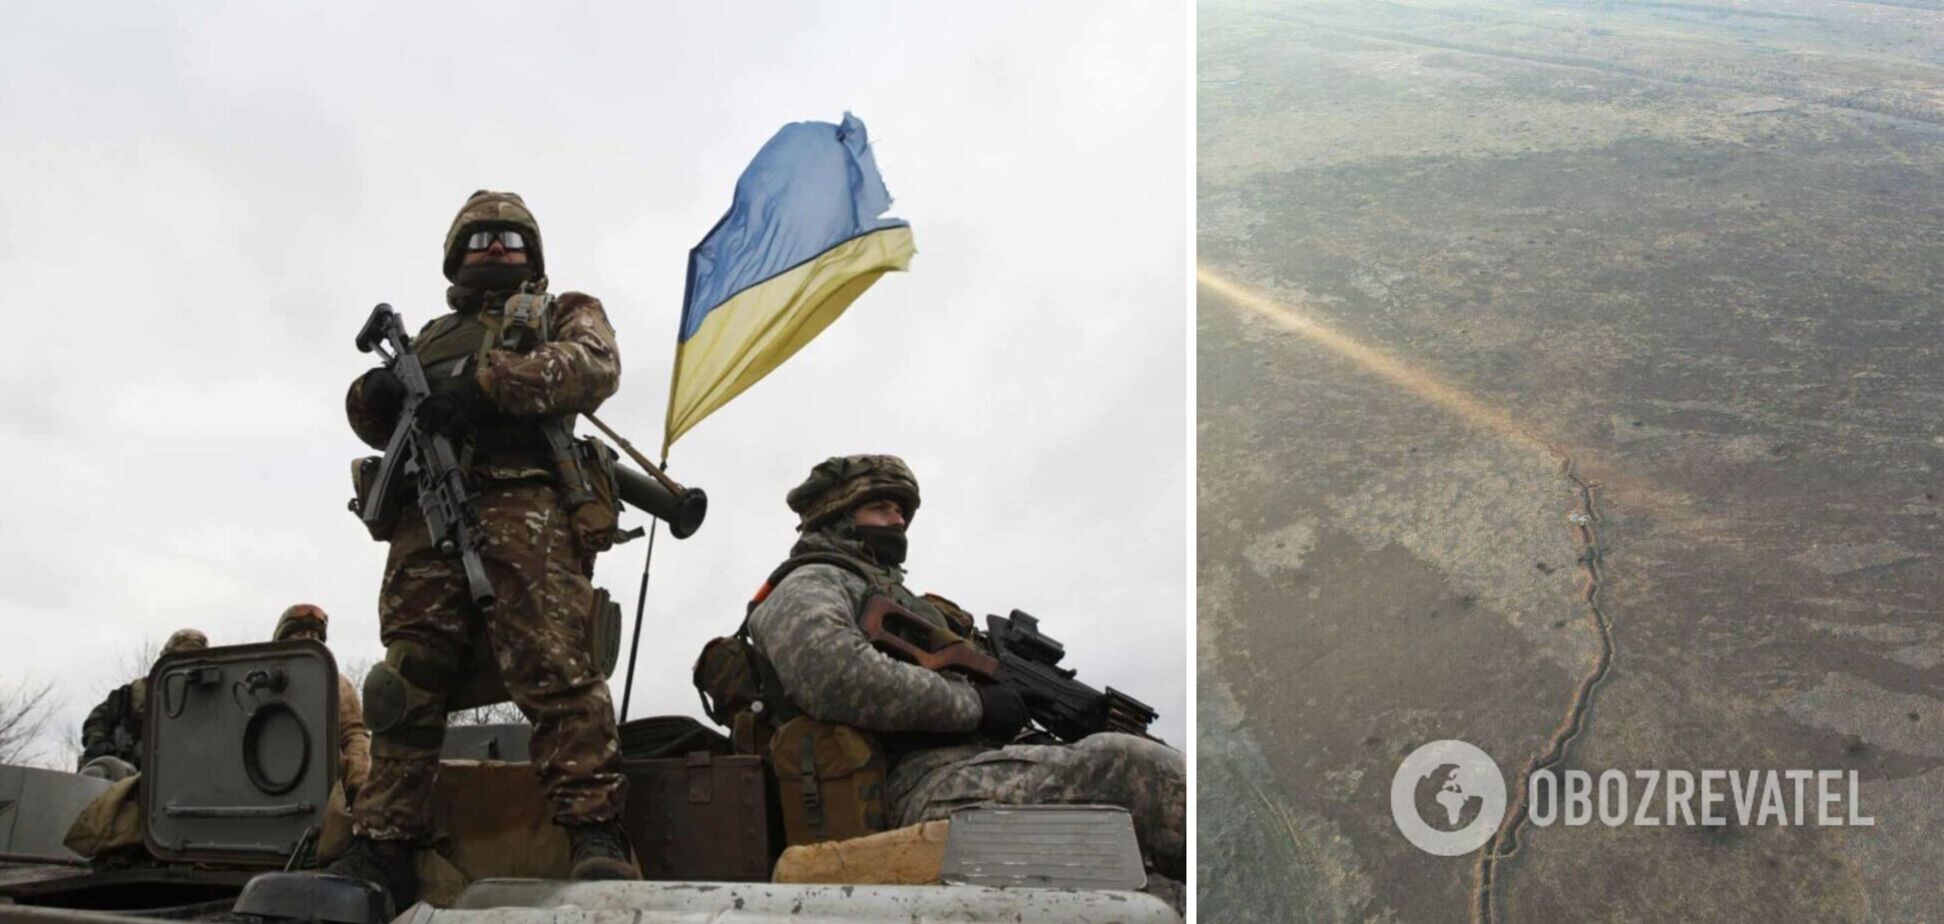 Українські артилеристи накрили вогнем 'вагнерівців' на Донбасі. Фото 18+